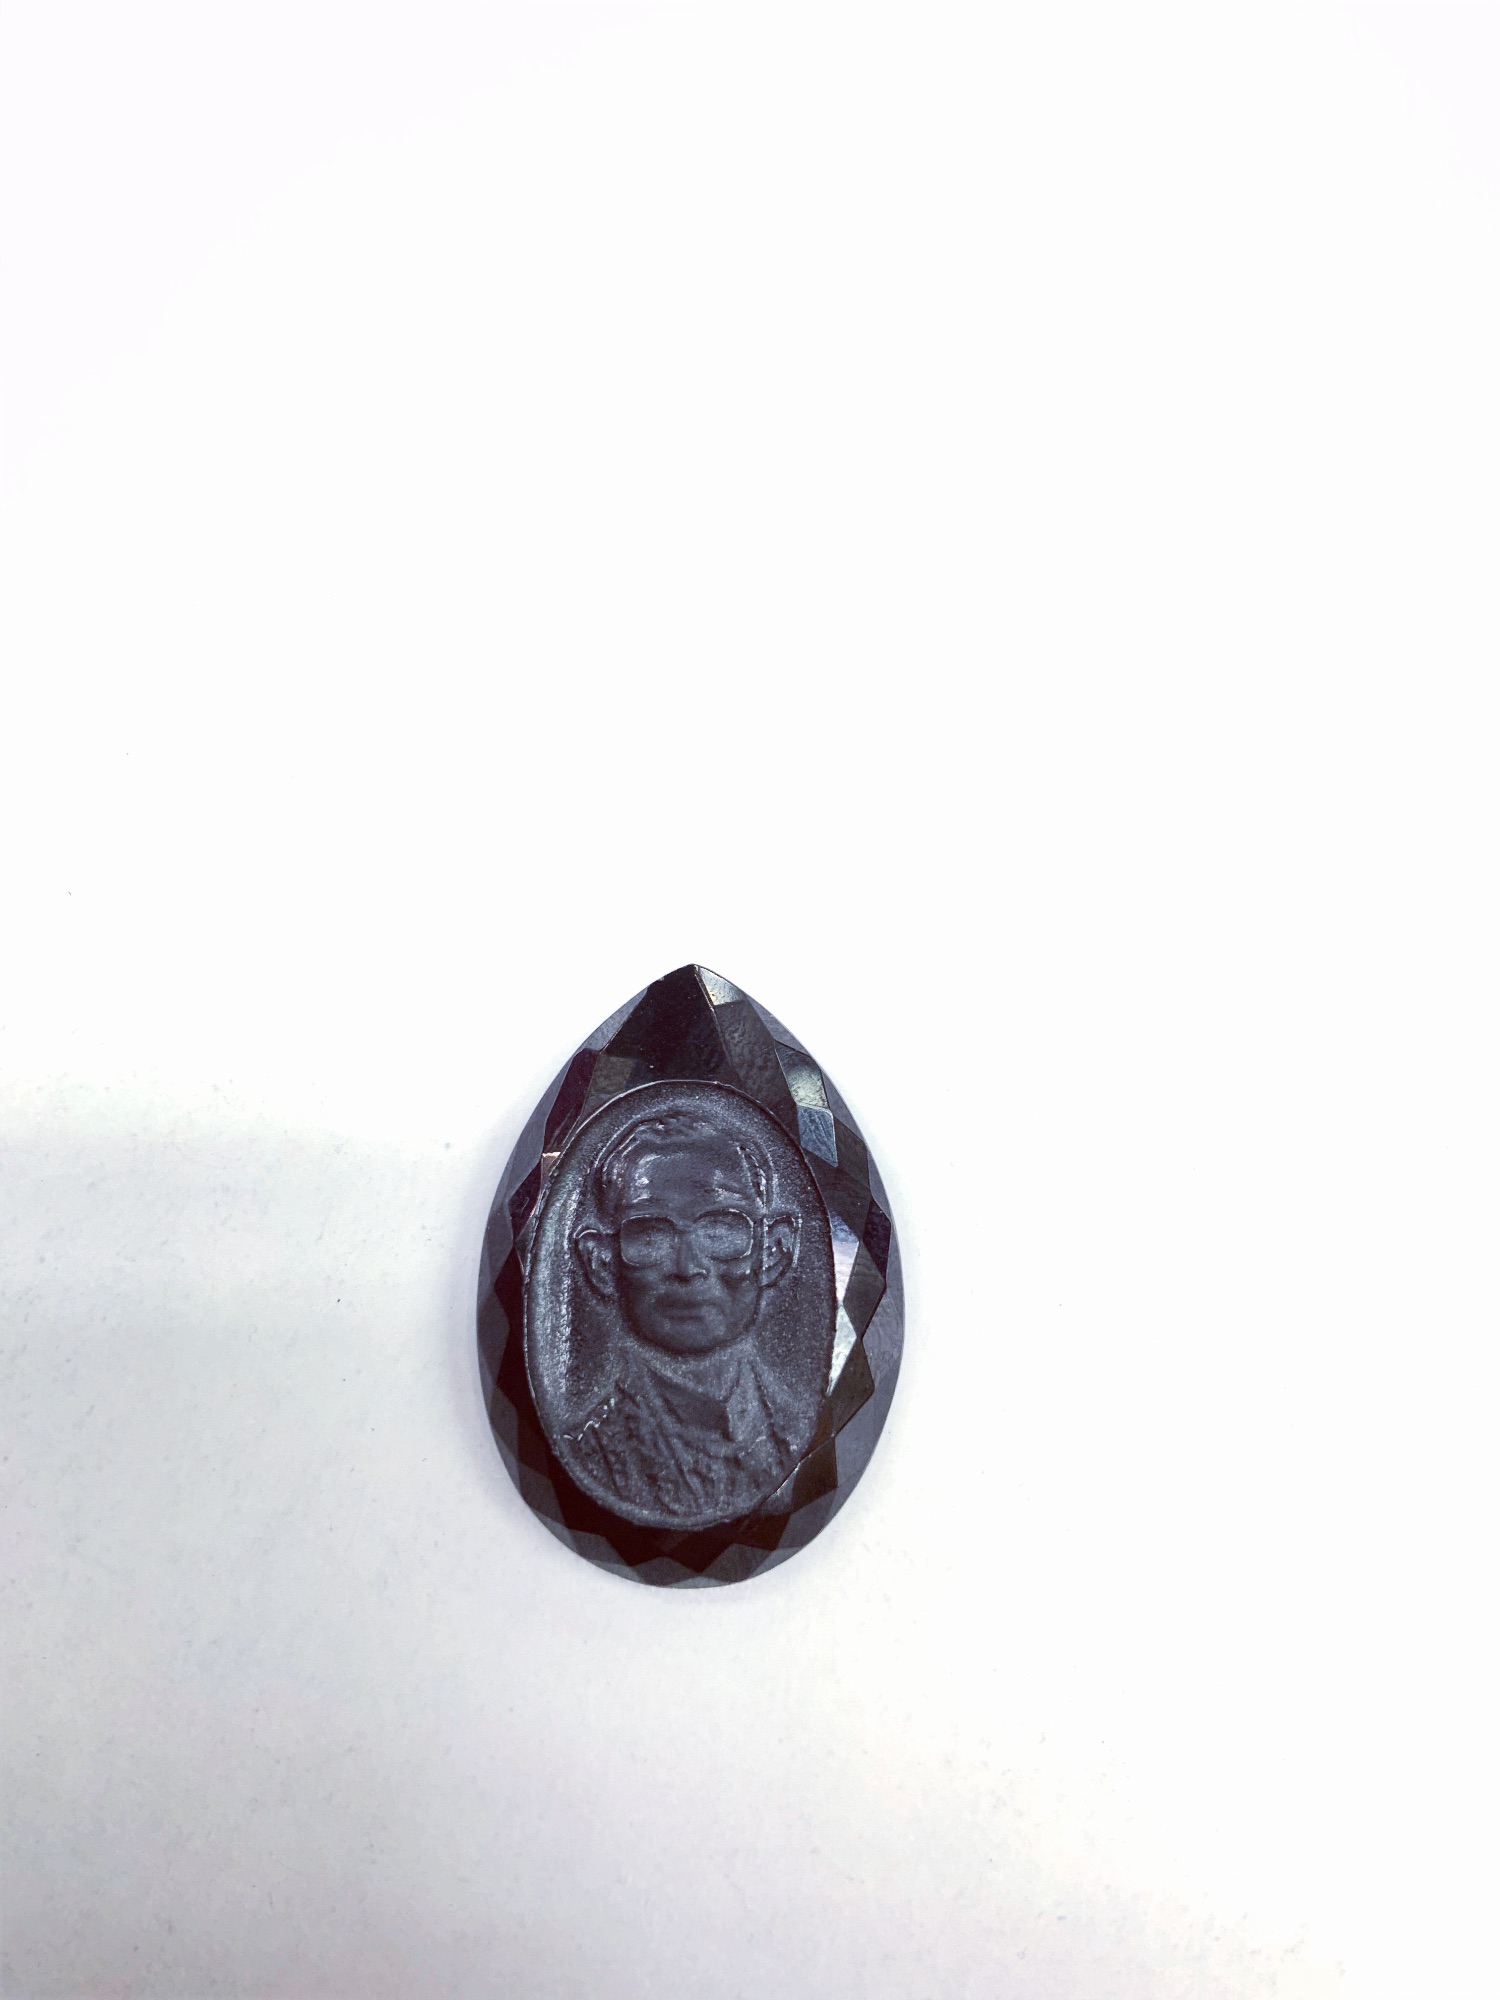 นิลแท้ แกะสลัก ร.9 / Black Onyx (Real 100%) with Carvings of King Rama 9 (Pear Shape)